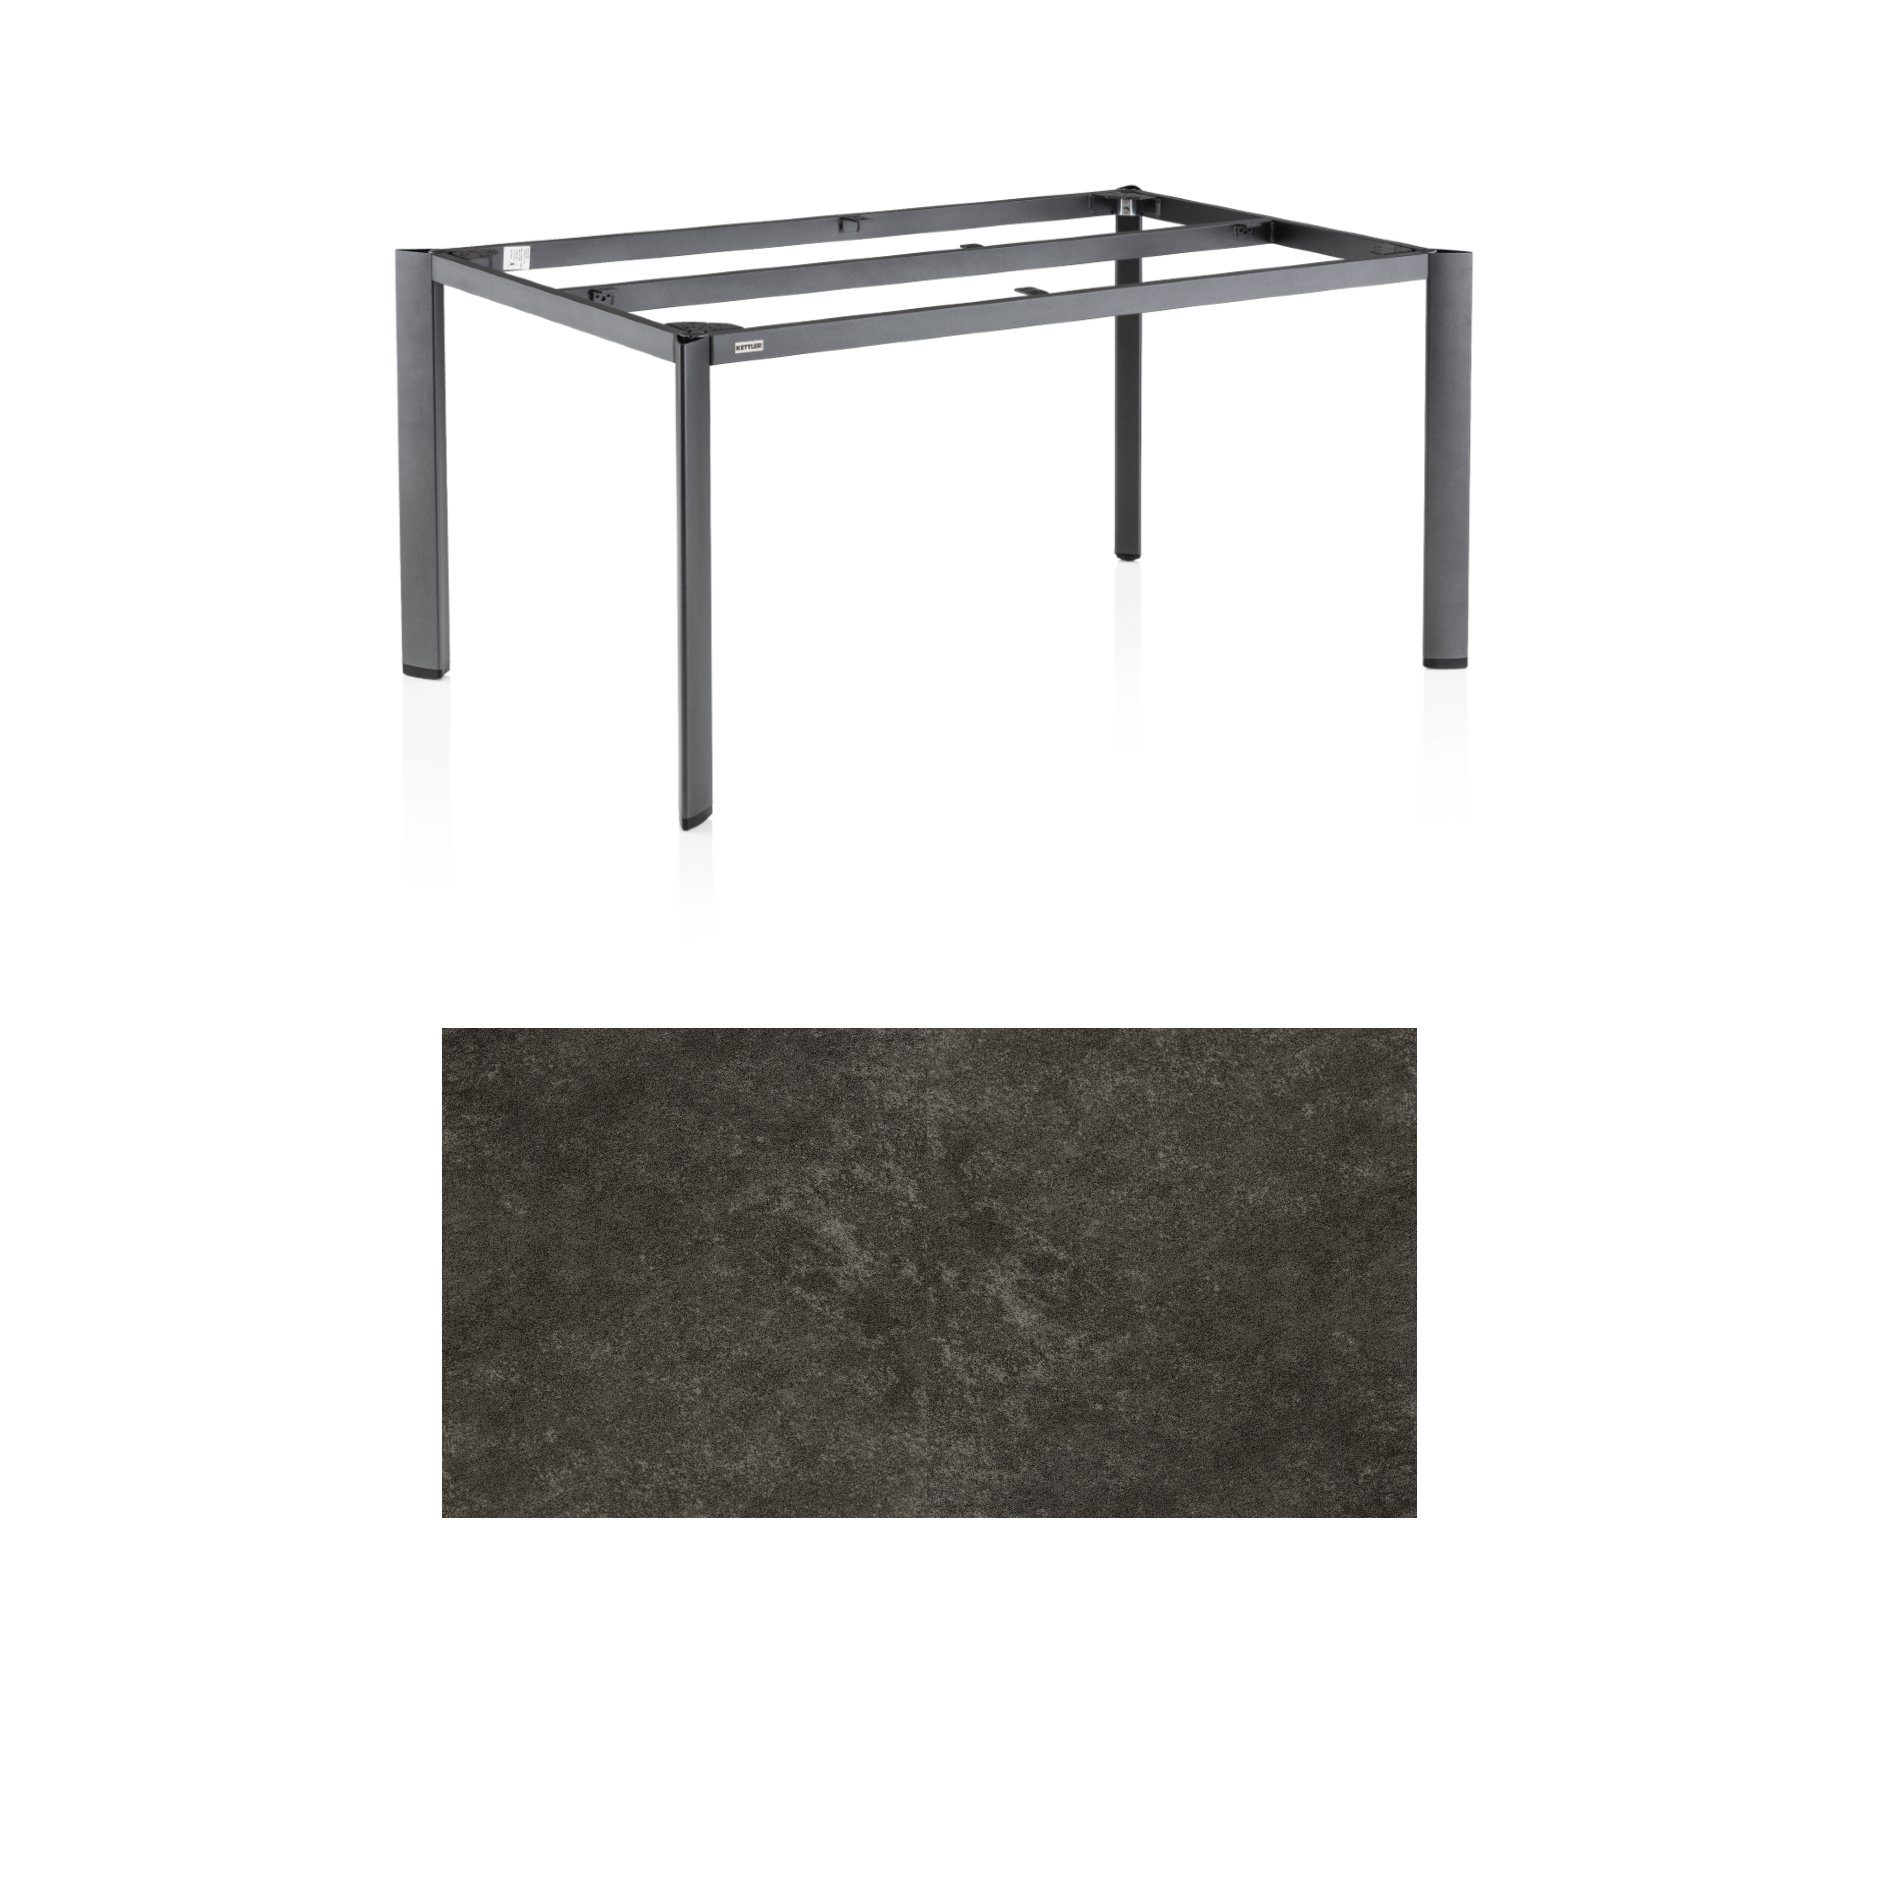 Kettler "Edge" Gartentisch, Tischgestell 160x95cm, Aluminium anthrazit, mit Tischplatte Keramik anthrazit